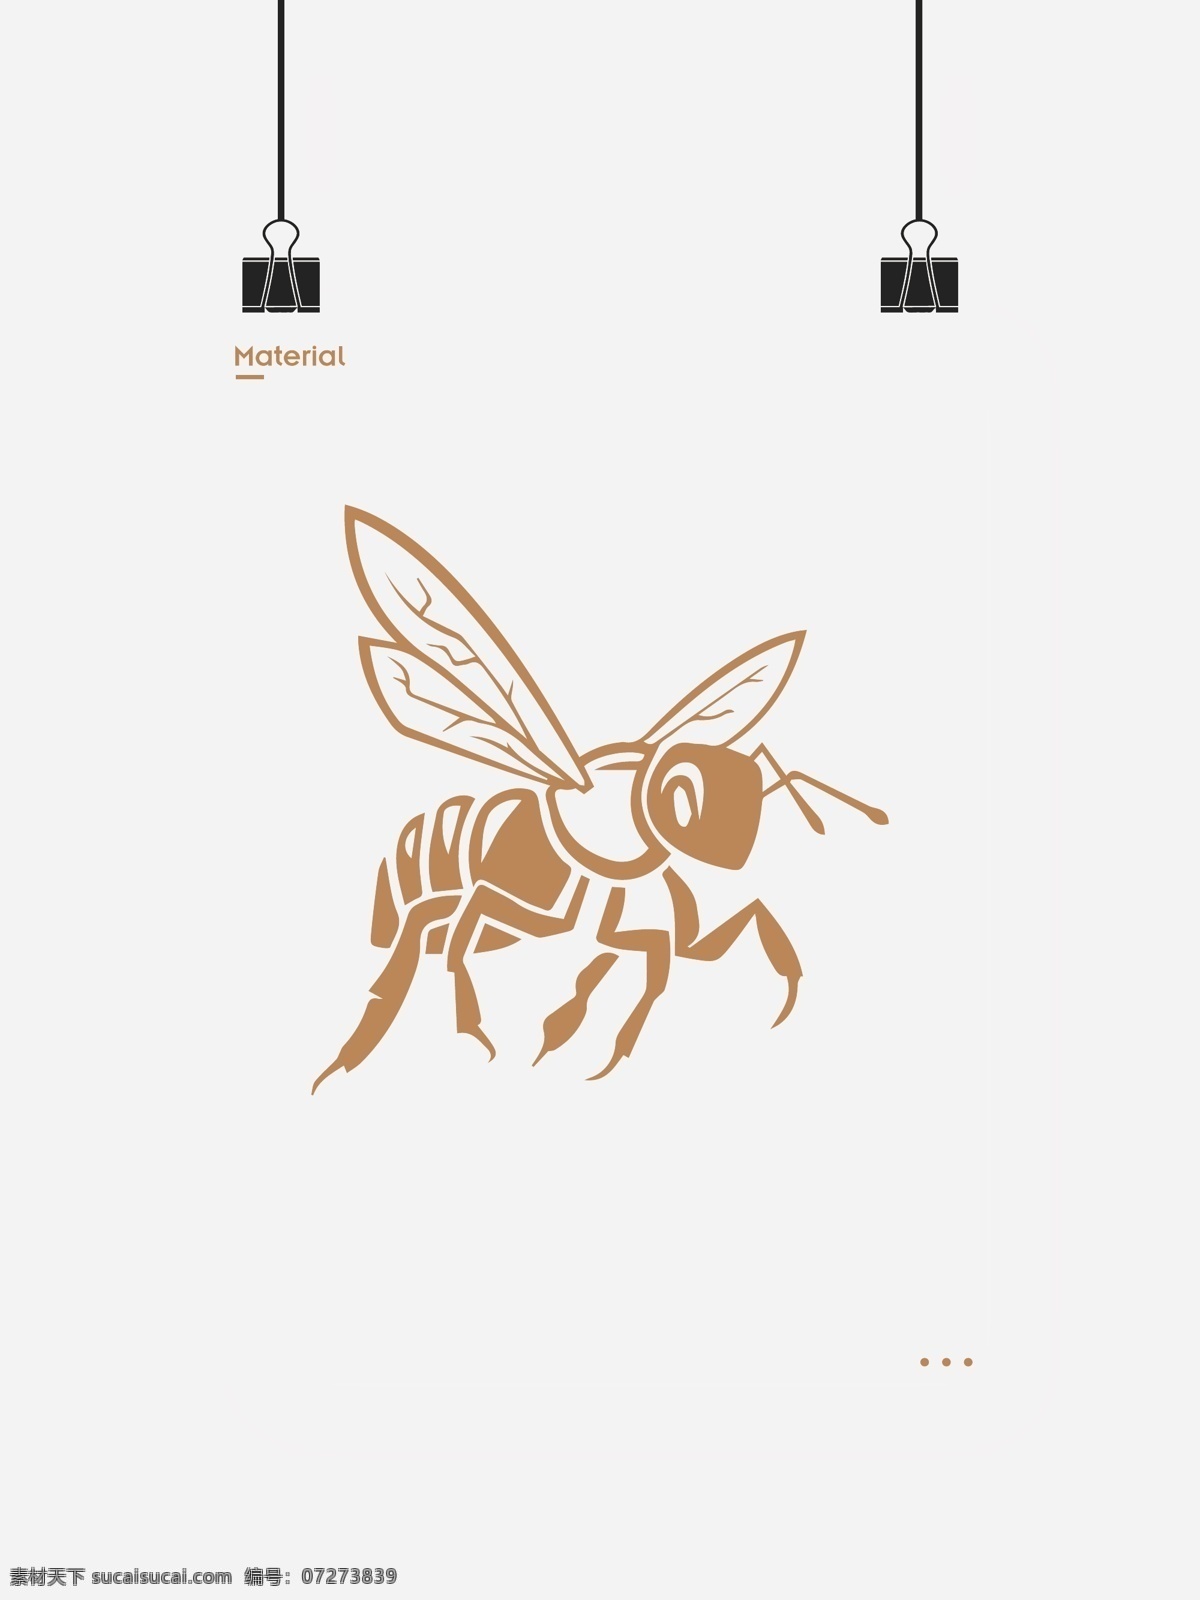 小蜜蜂 可爱蜜蜂 卡通蜜蜂 手绘蜜蜂 矢量蜜蜂 蜜蜂素材 蜜蜂元素 蜜蜂图案 蜜蜂图形 蜜蜂logo 纹身蜜蜂 矢量图标 标志图标 其他图标